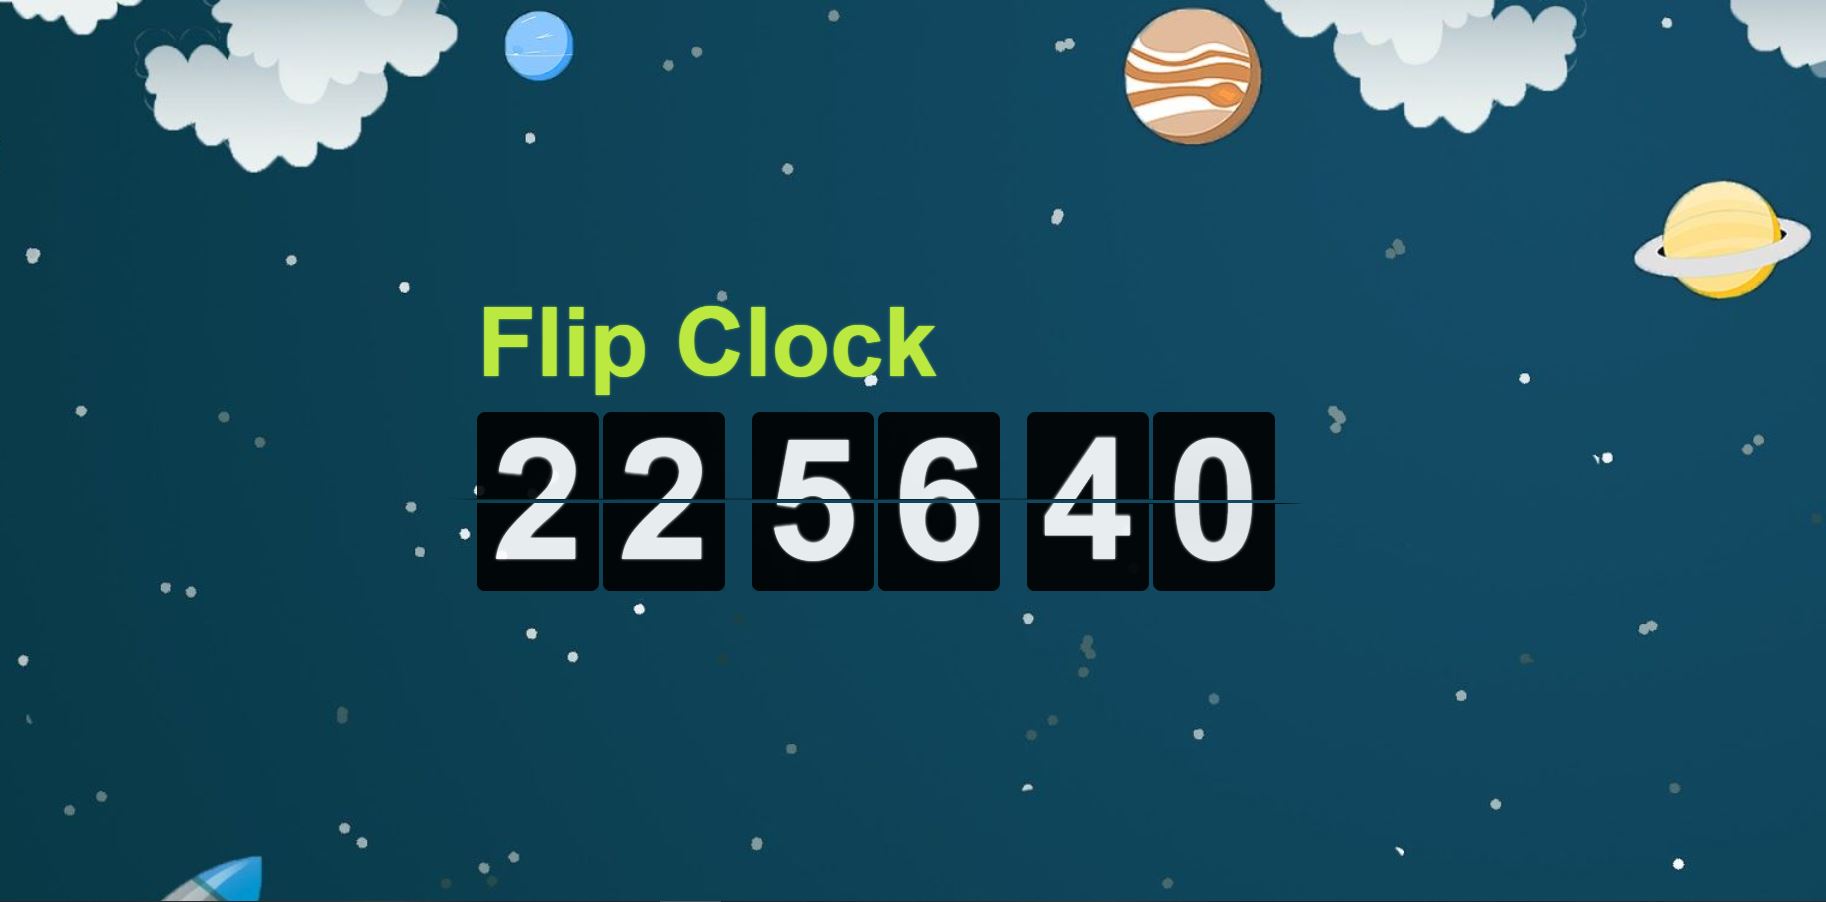 Flip Clock - Đồng hồ lật số